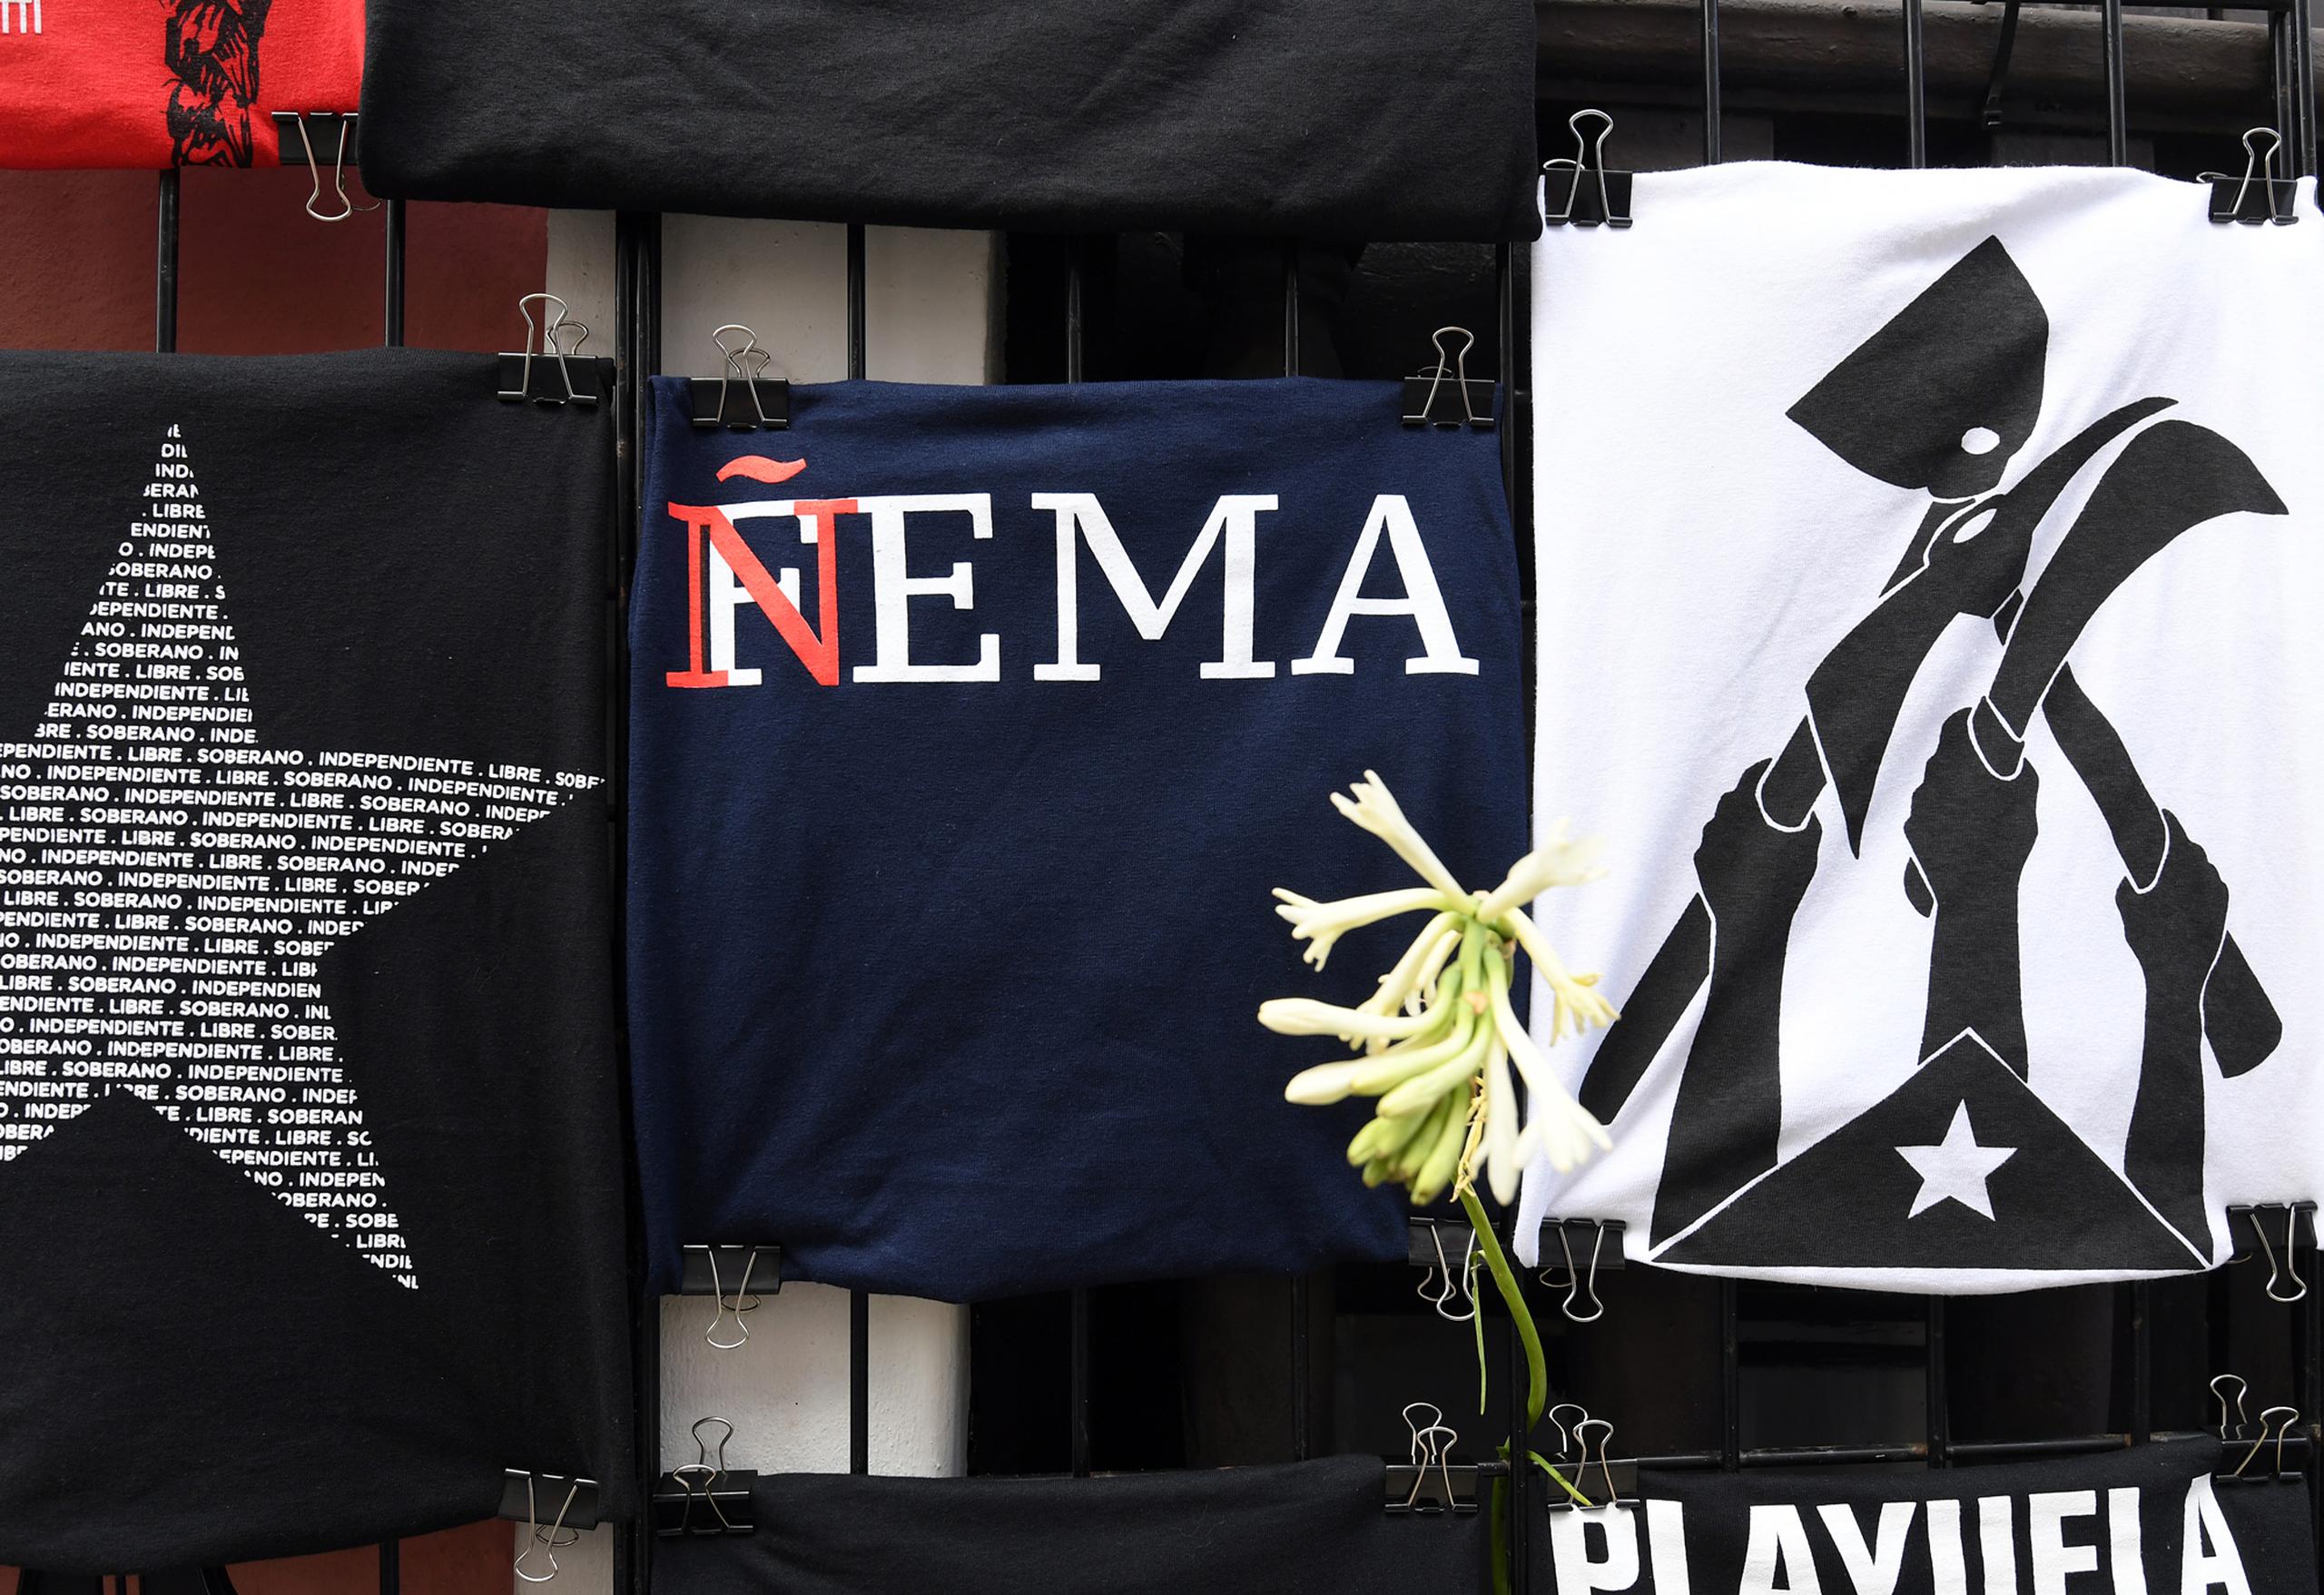 Hay camisas que leen “Ñema” en lugar de FEMA. (andre.kang@gfrmedia.com)